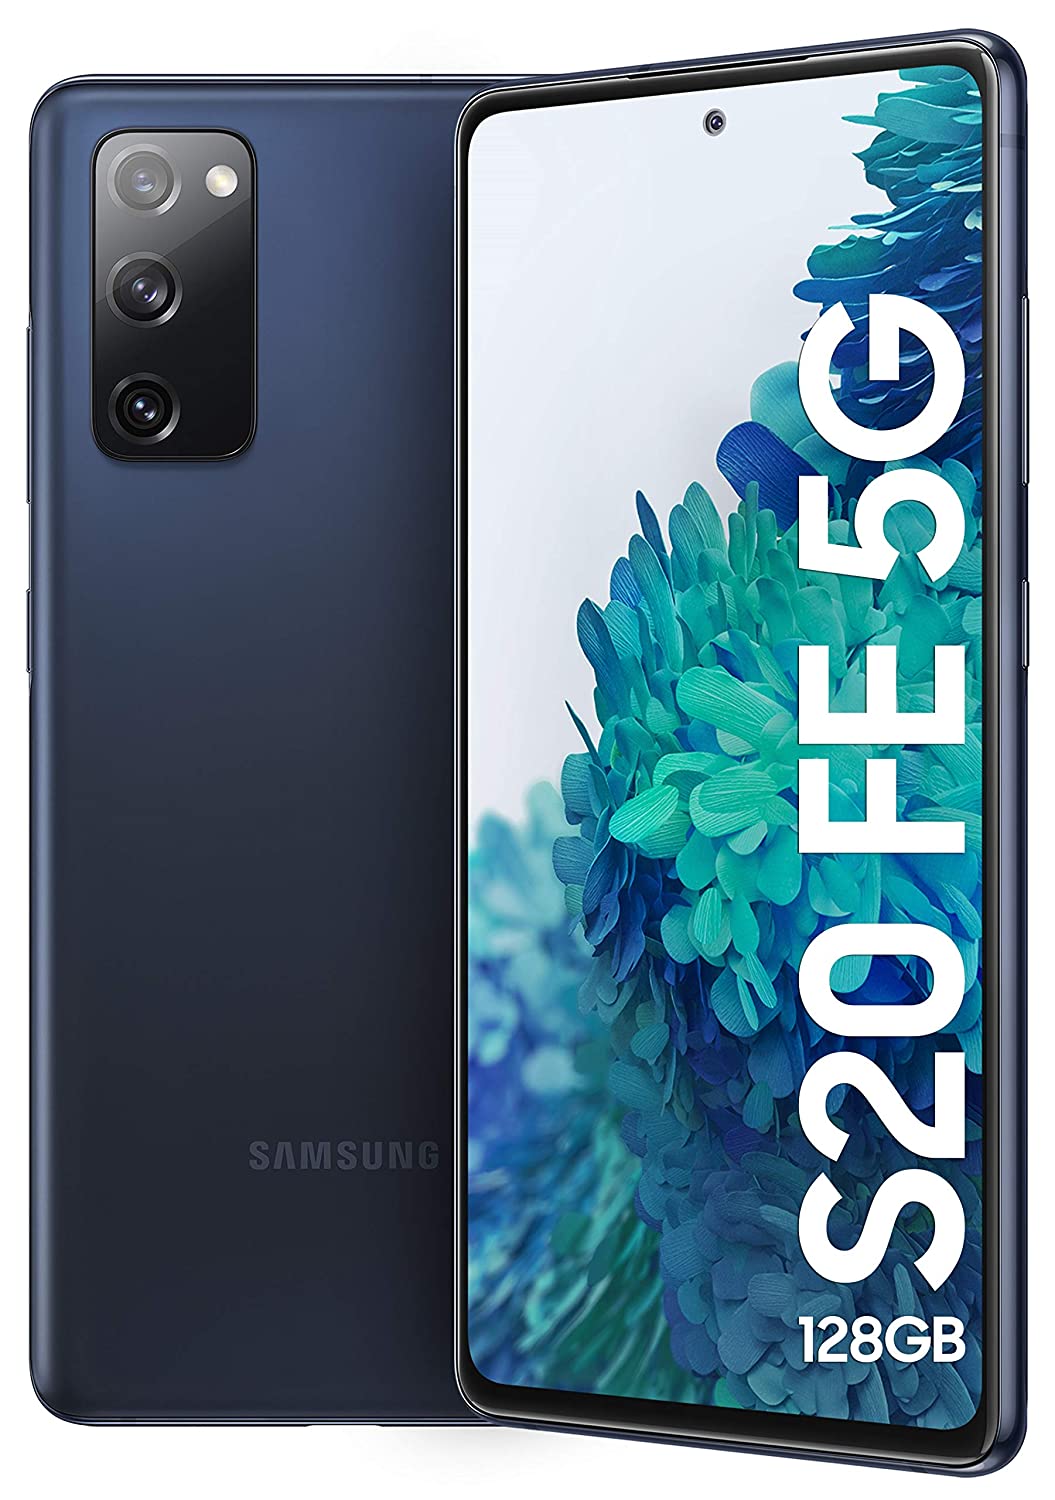 Samsung Galaxy S20 FE 5G फ़ोन को अमेज़न इंडिया से खरीद सकते है